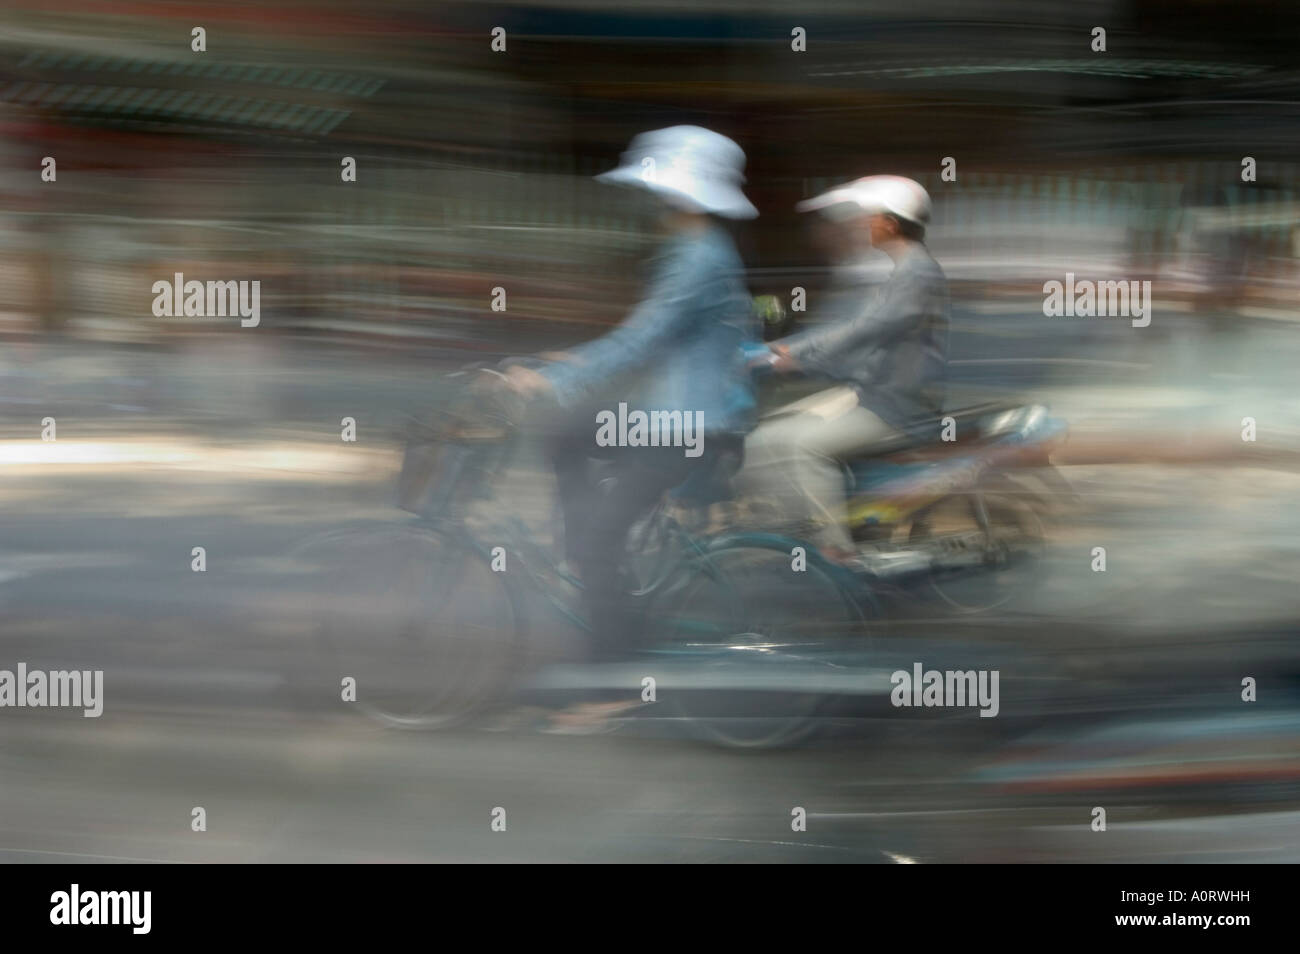 Moto cycliste et Ho Chi Minh City Saigon Vietnam Asie Asie du sud-est Banque D'Images